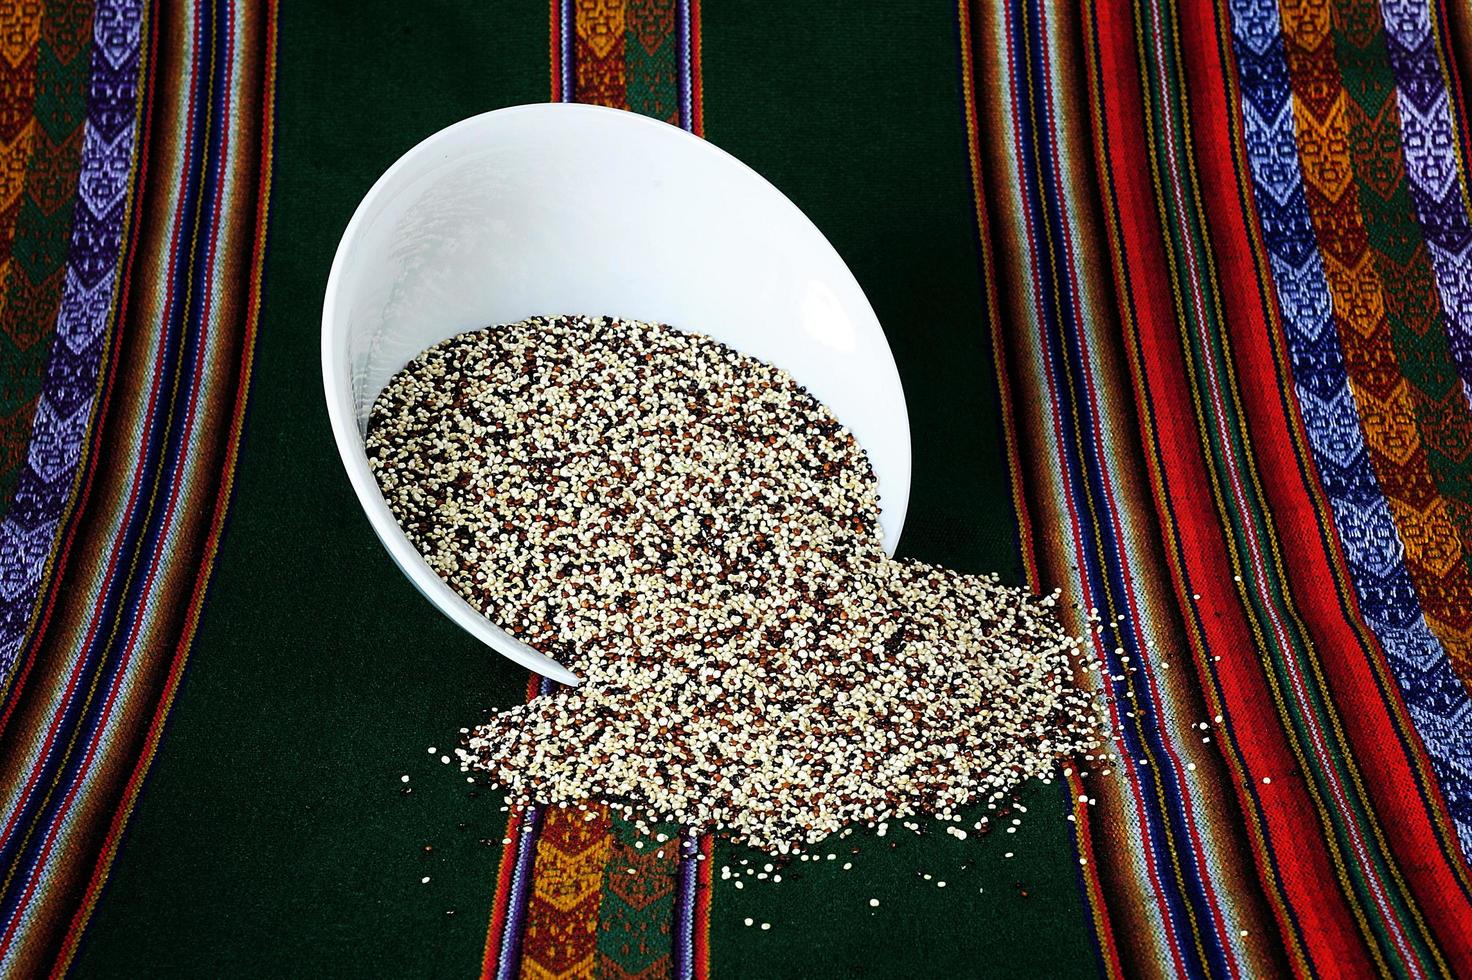 tricolor quinoa korn tricolor quinoa korn på en vit platta på en inca mantel foto